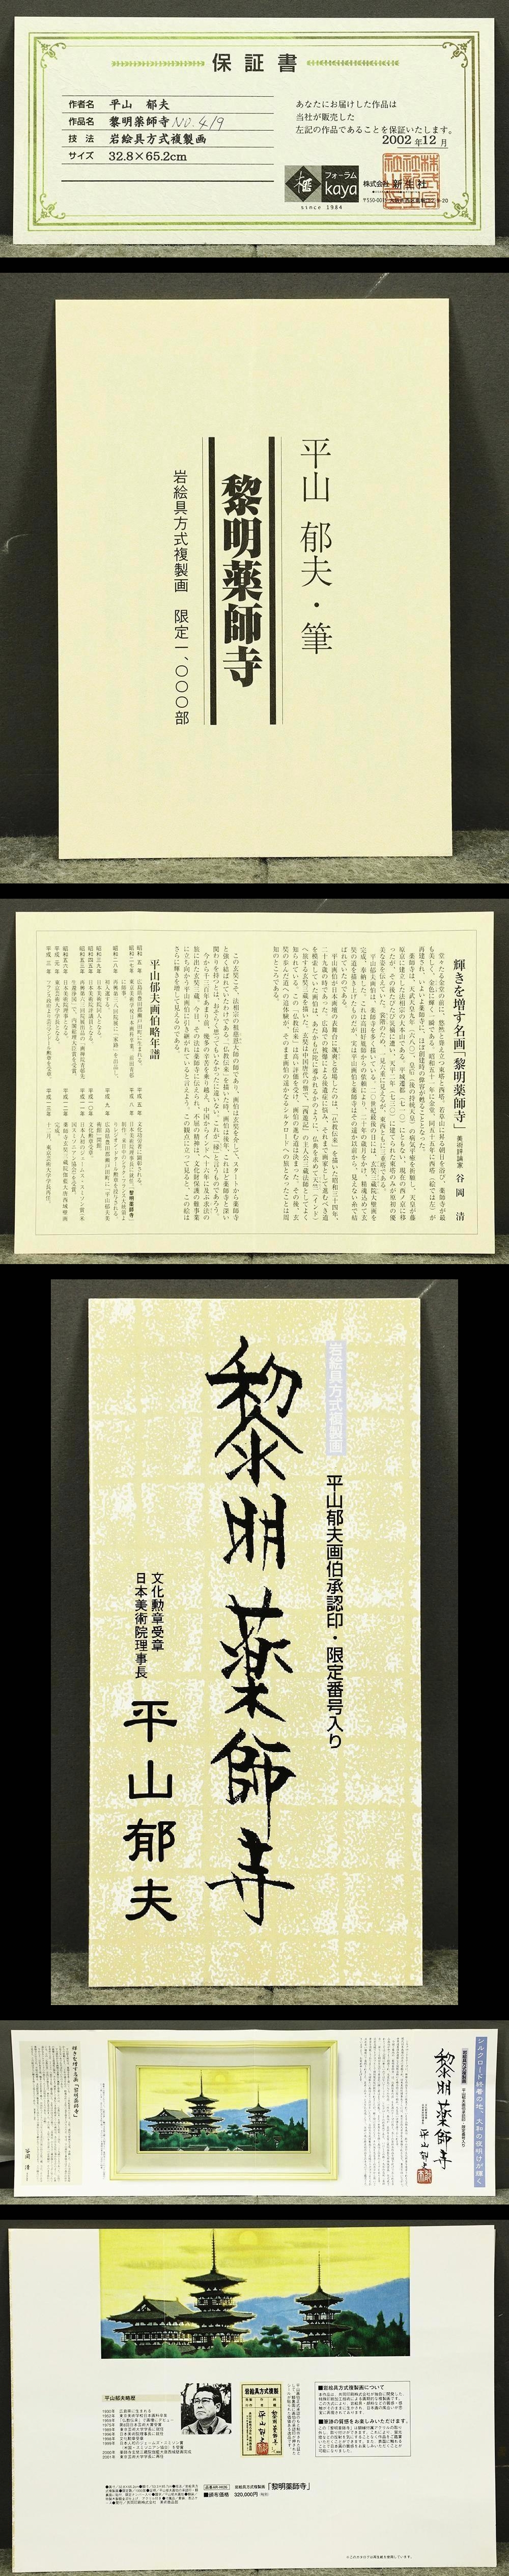 平山郁夫「夕映薬師寺」岩絵具方式彩美版 大型額装品 絵画